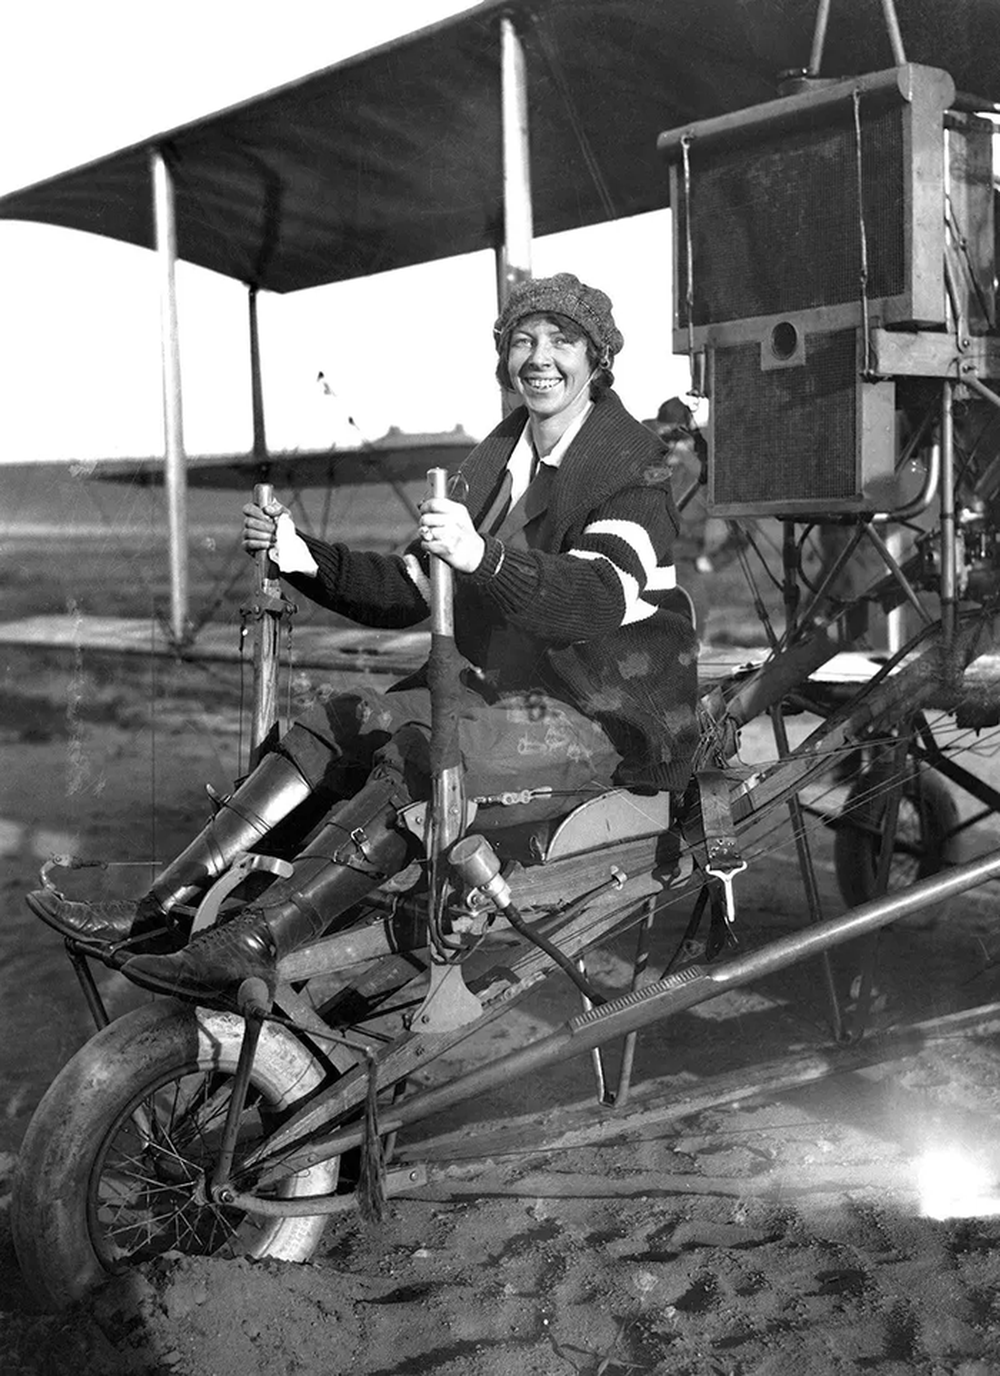 Những bức ảnh cổ điển về nữ phi công đầu tiên trong lịch sử, giai đoạn 1900-1930 - Ảnh 4.